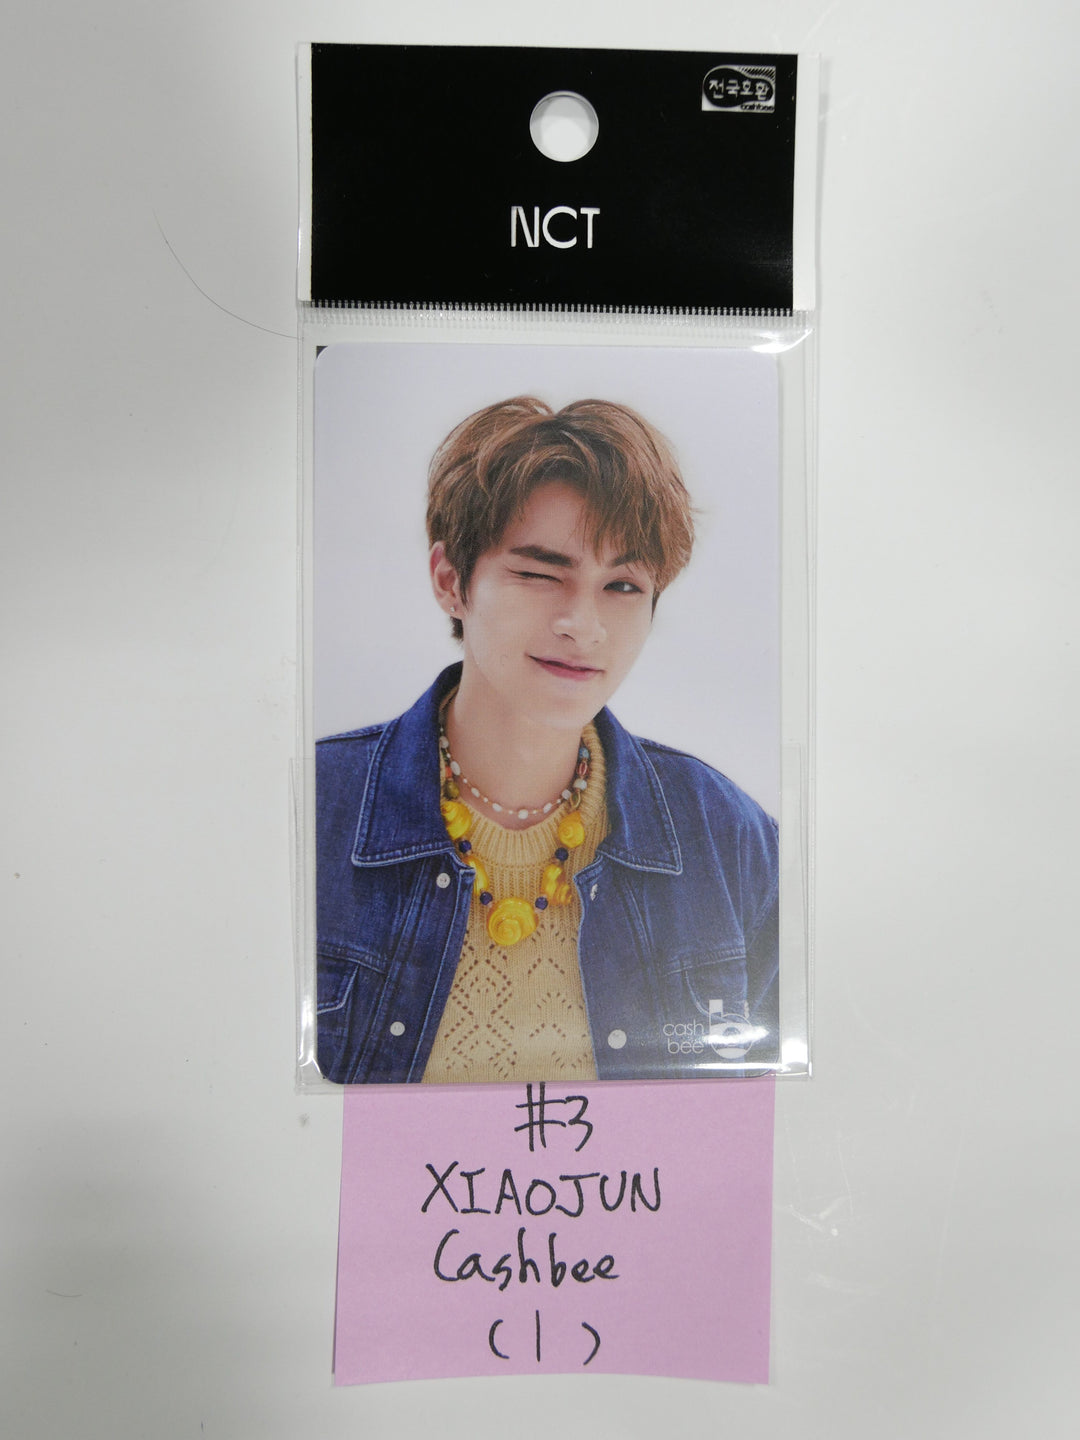 NCT RESONANCE Pt.2 공식 상품 캐시비 운송 카드